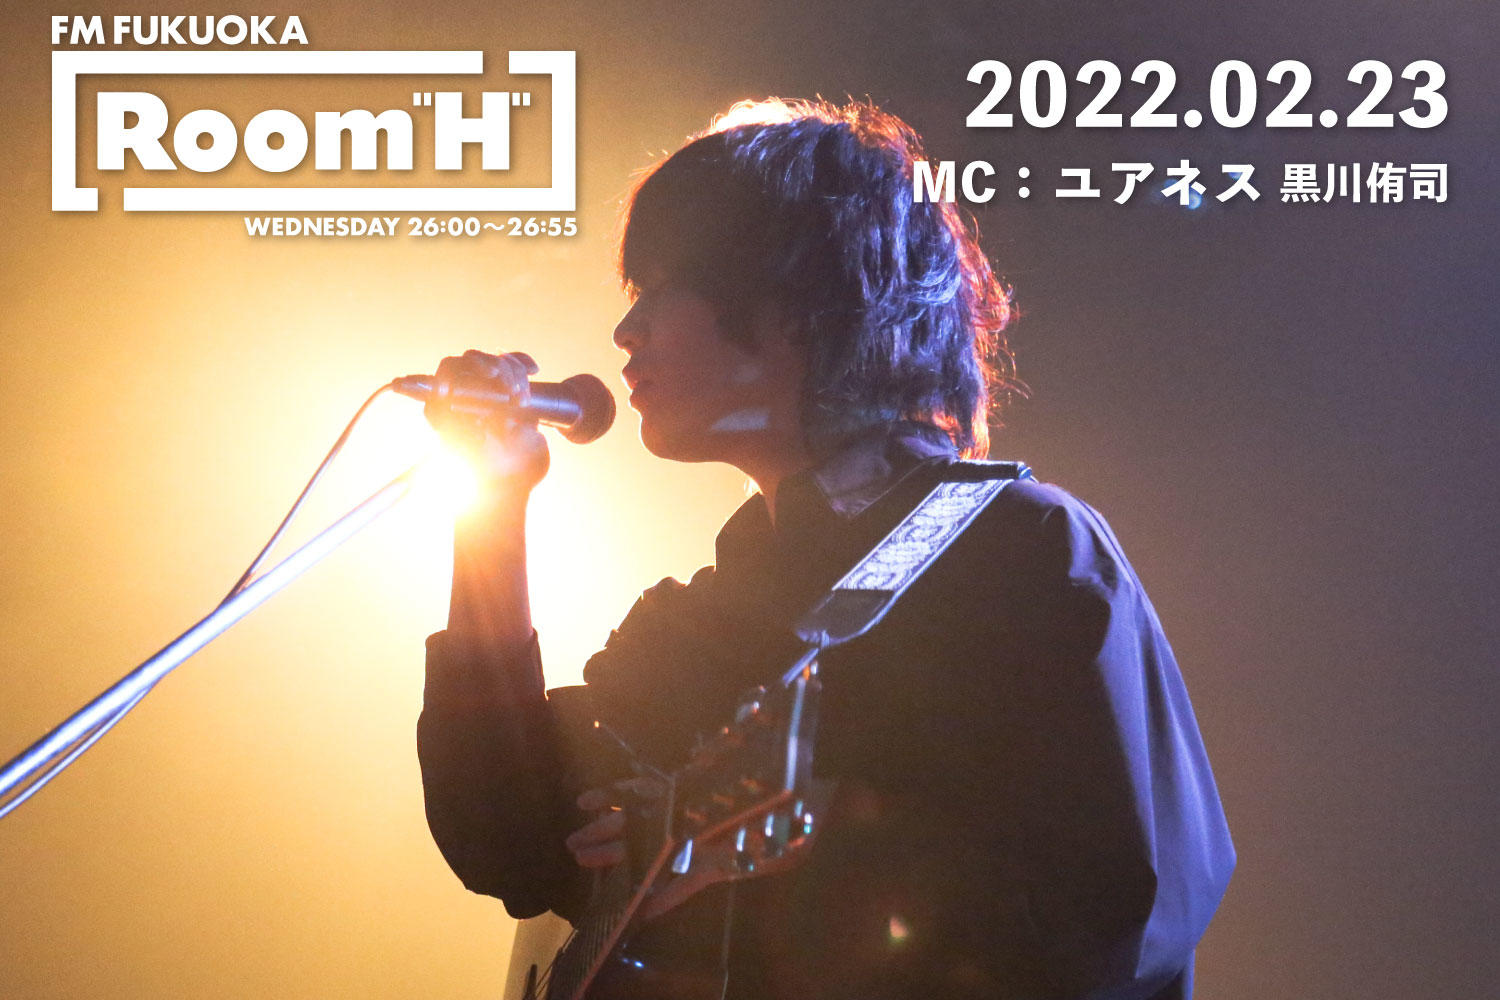 【読むラジオ】MC：黒川侑司(ユアネス) 現在開催中の全国ツアーや今紹介したい曲について「Room H」 -2022.02.23-